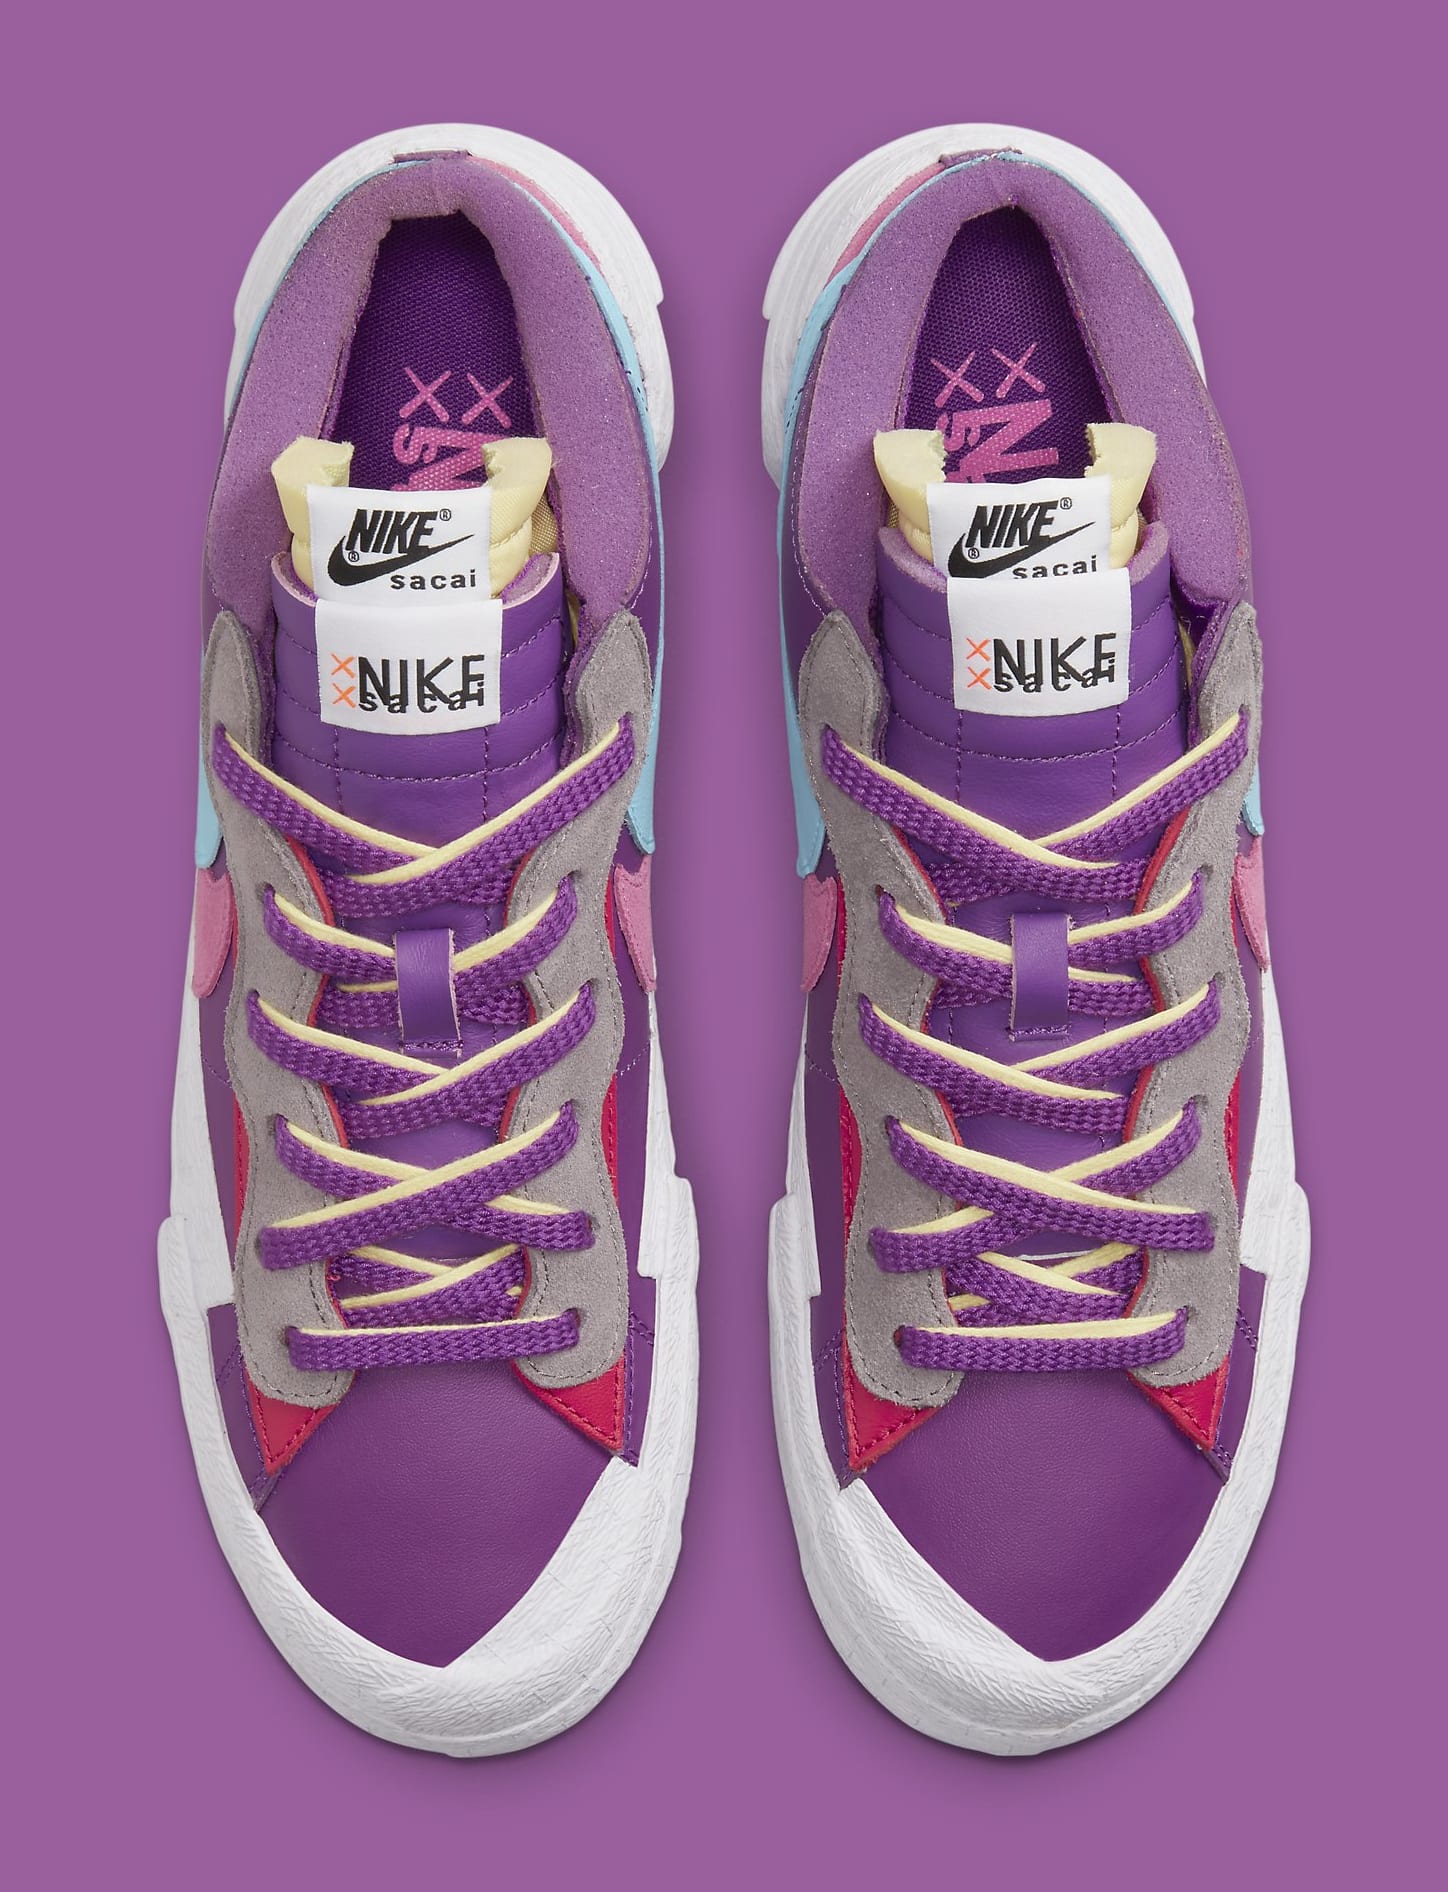 Kaws x Sacai x Nike Blazer Low 'Purple' DM7901 500 (Top)